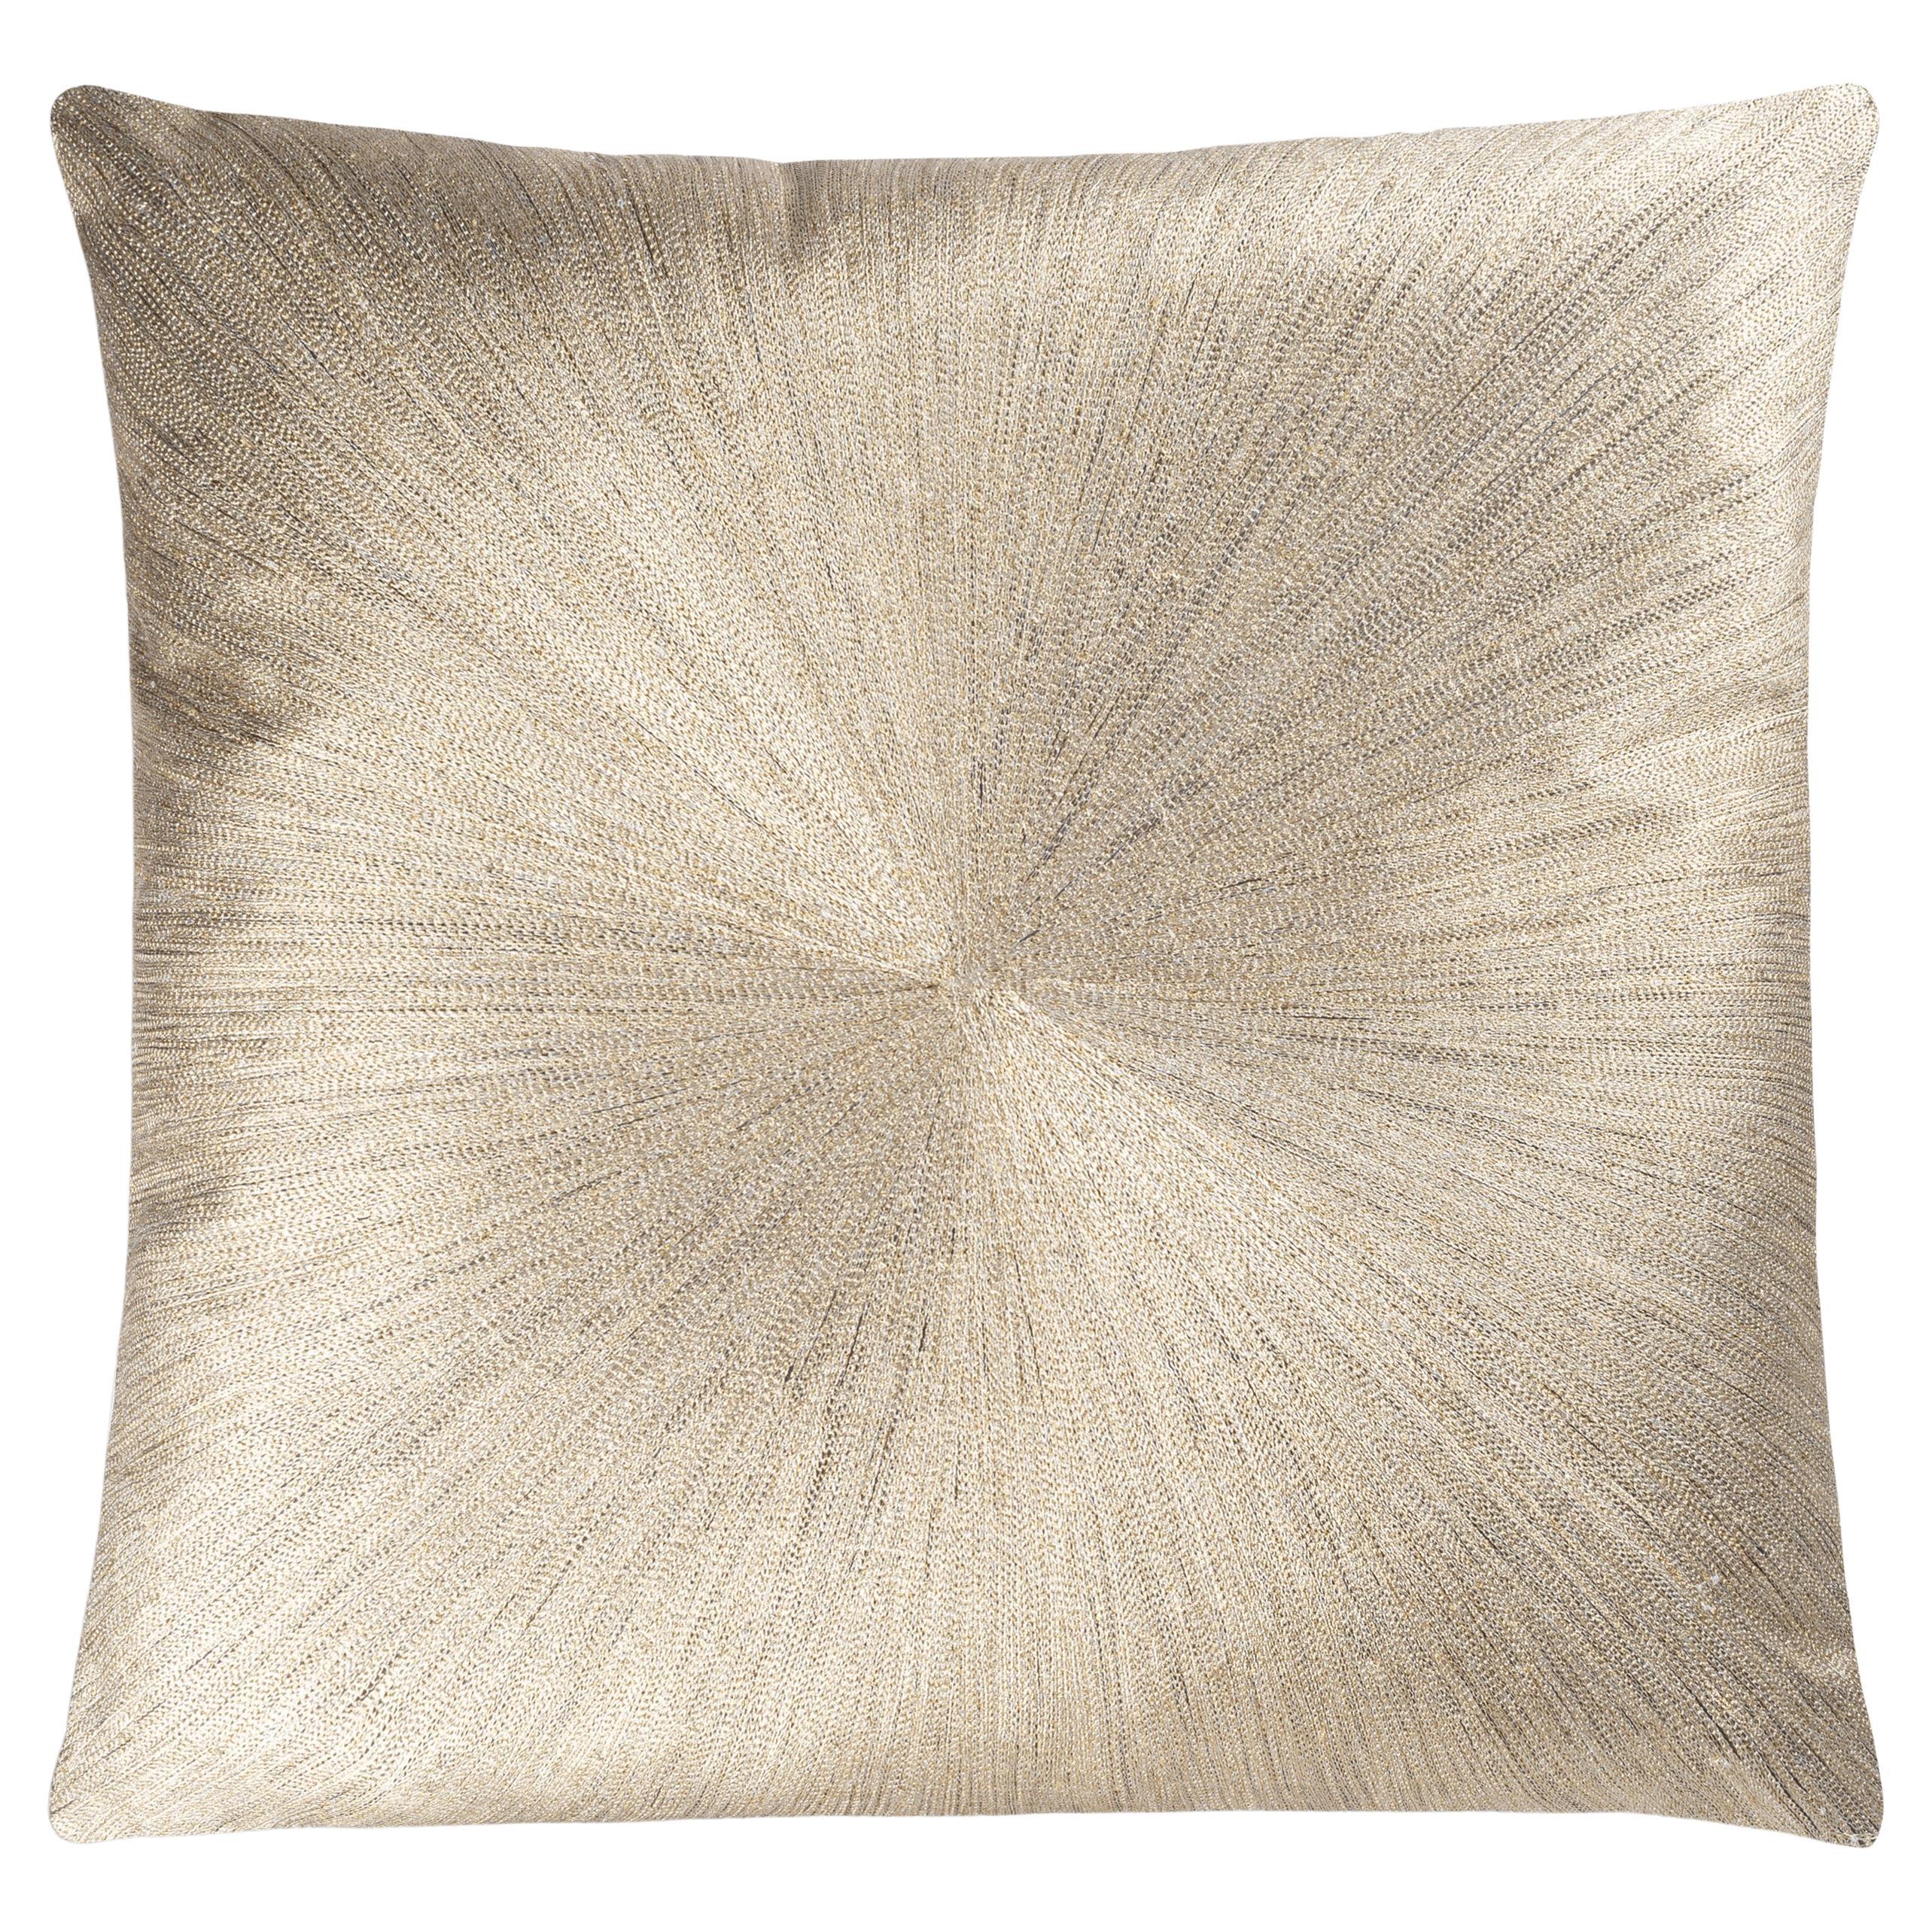 Nim Pillow, Charcoal Gold Linen